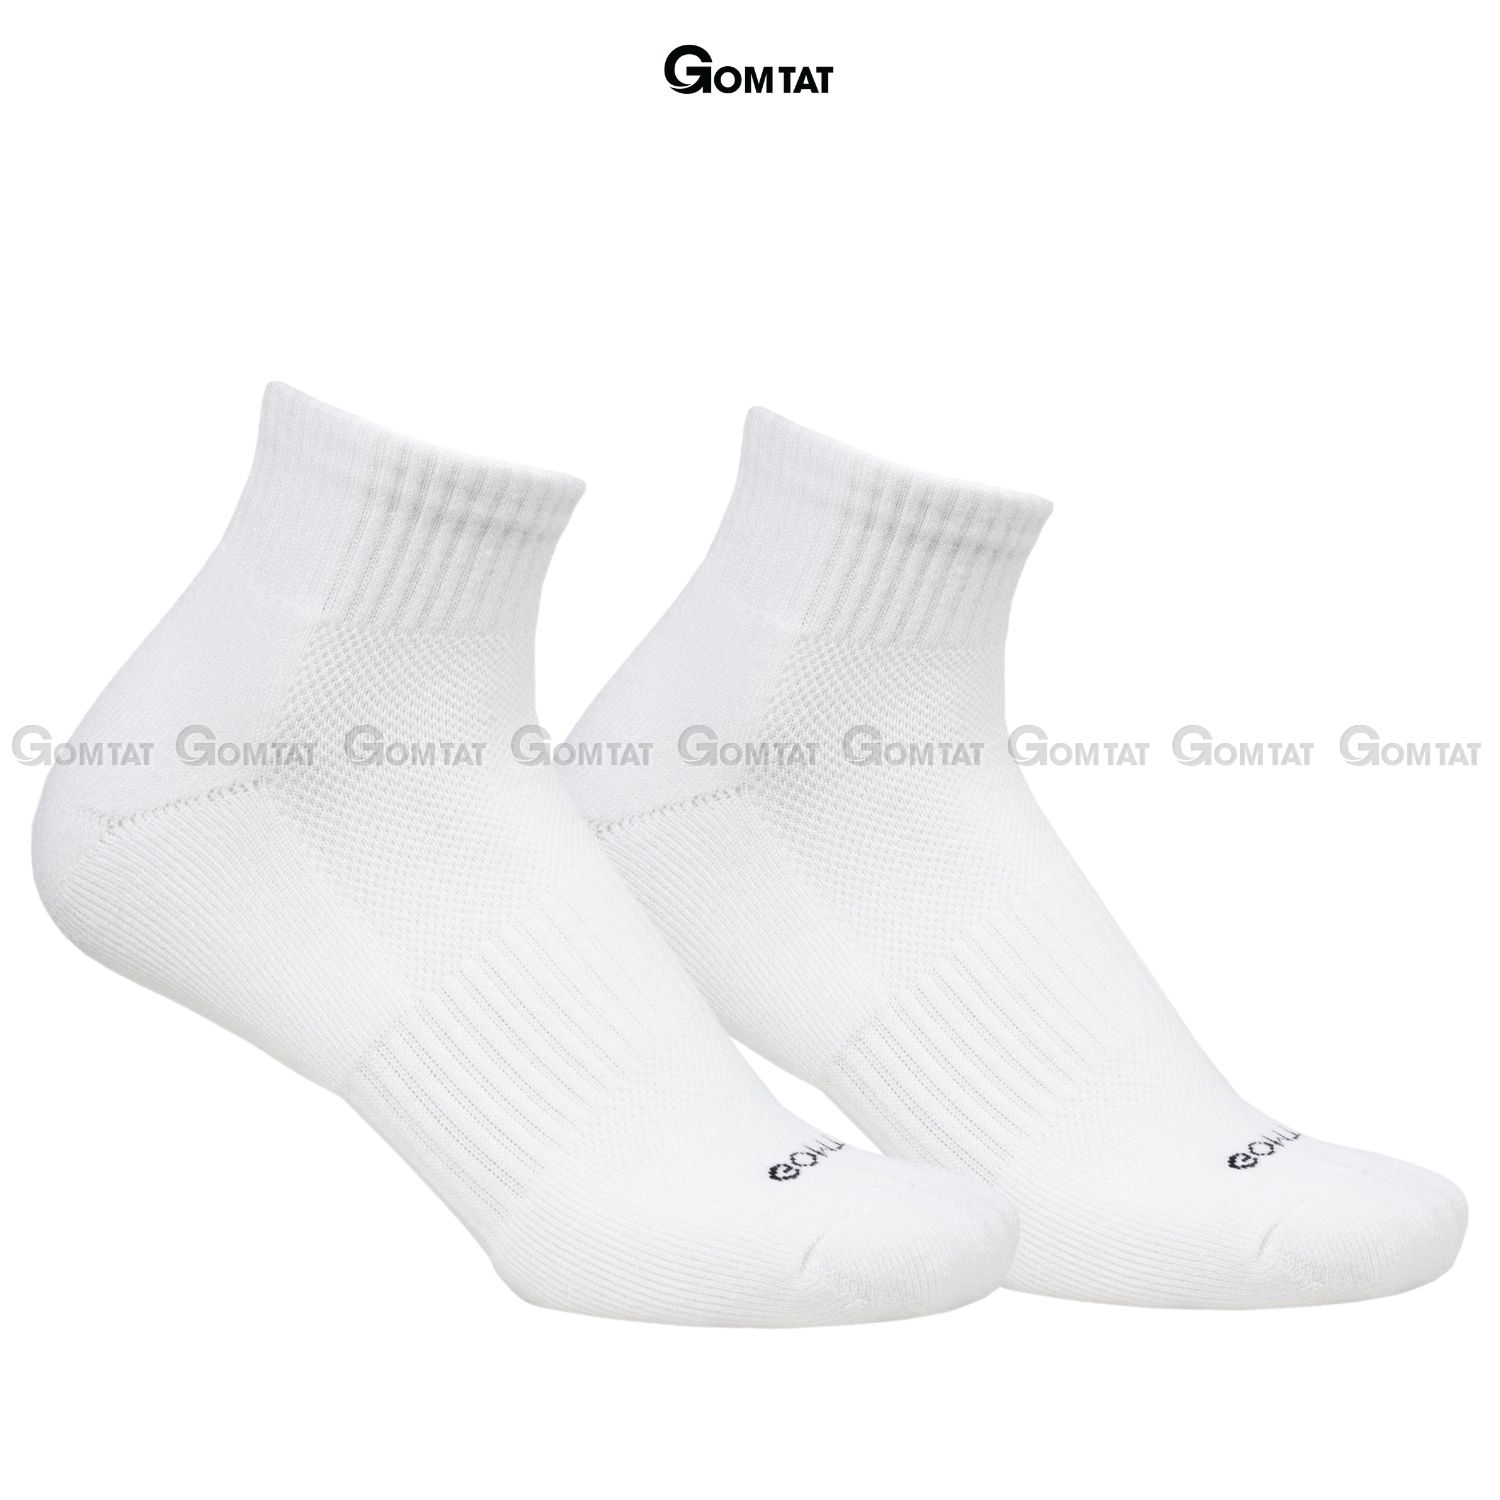 Combo 10 đôi vớ trắng GOMTAT nam nữ cổ cao, chất liệu cotton mềm mại, có lót xù êm chân - NGAN-STA-5009-TRANG-CB10